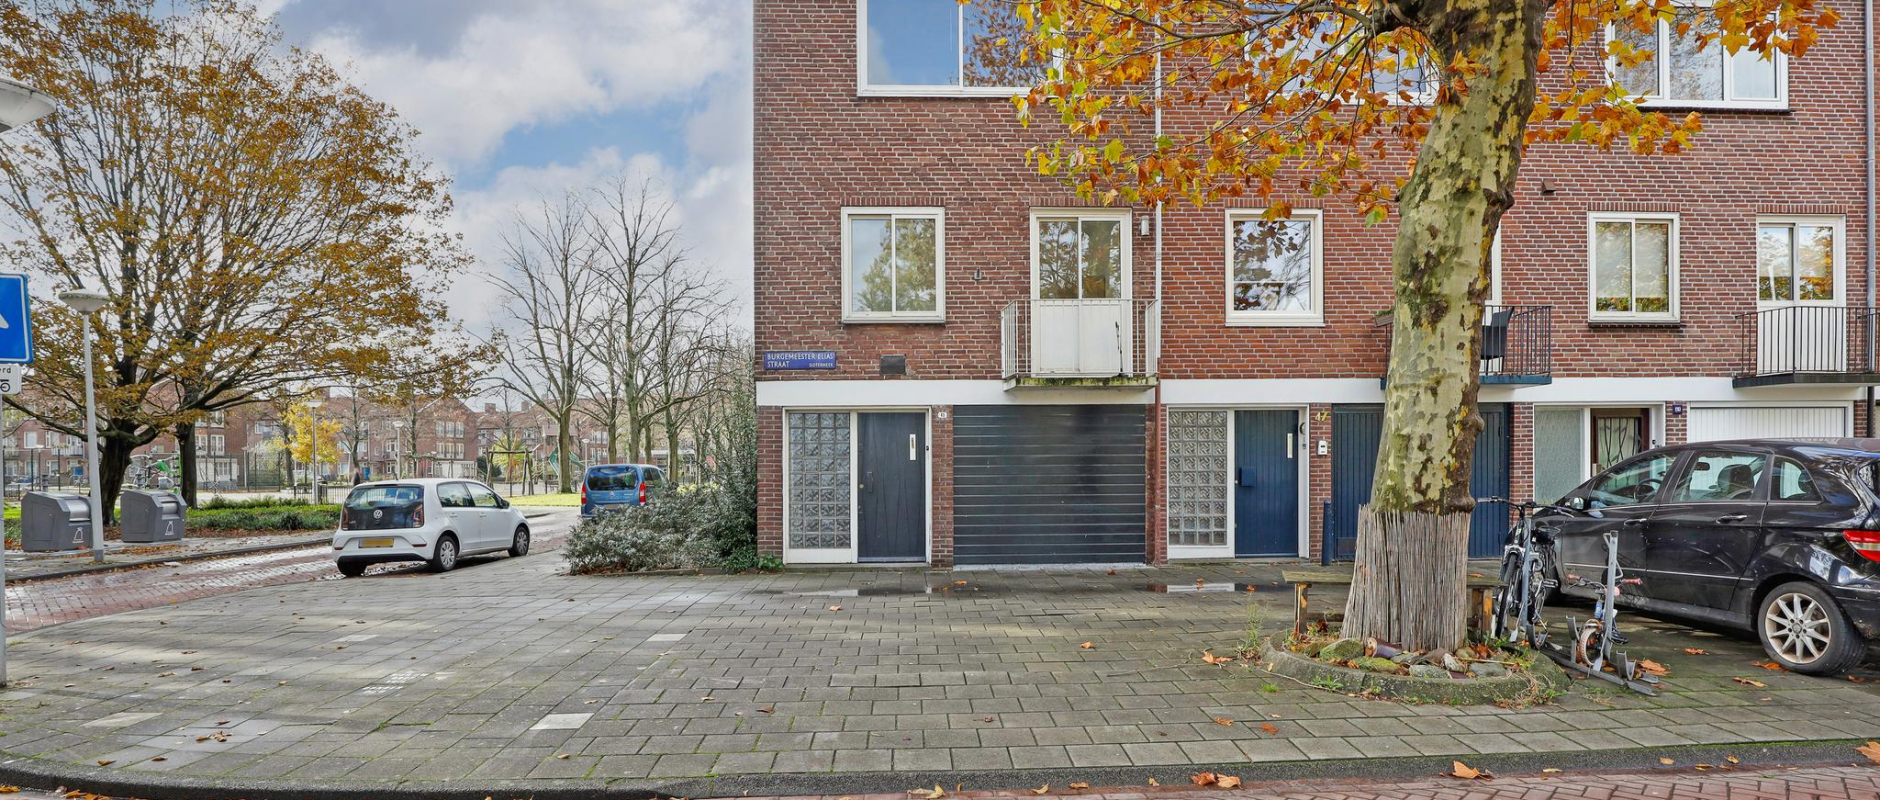 Woning te koop aan de Burgemeester Eliasstraat 45 te Amsterdam